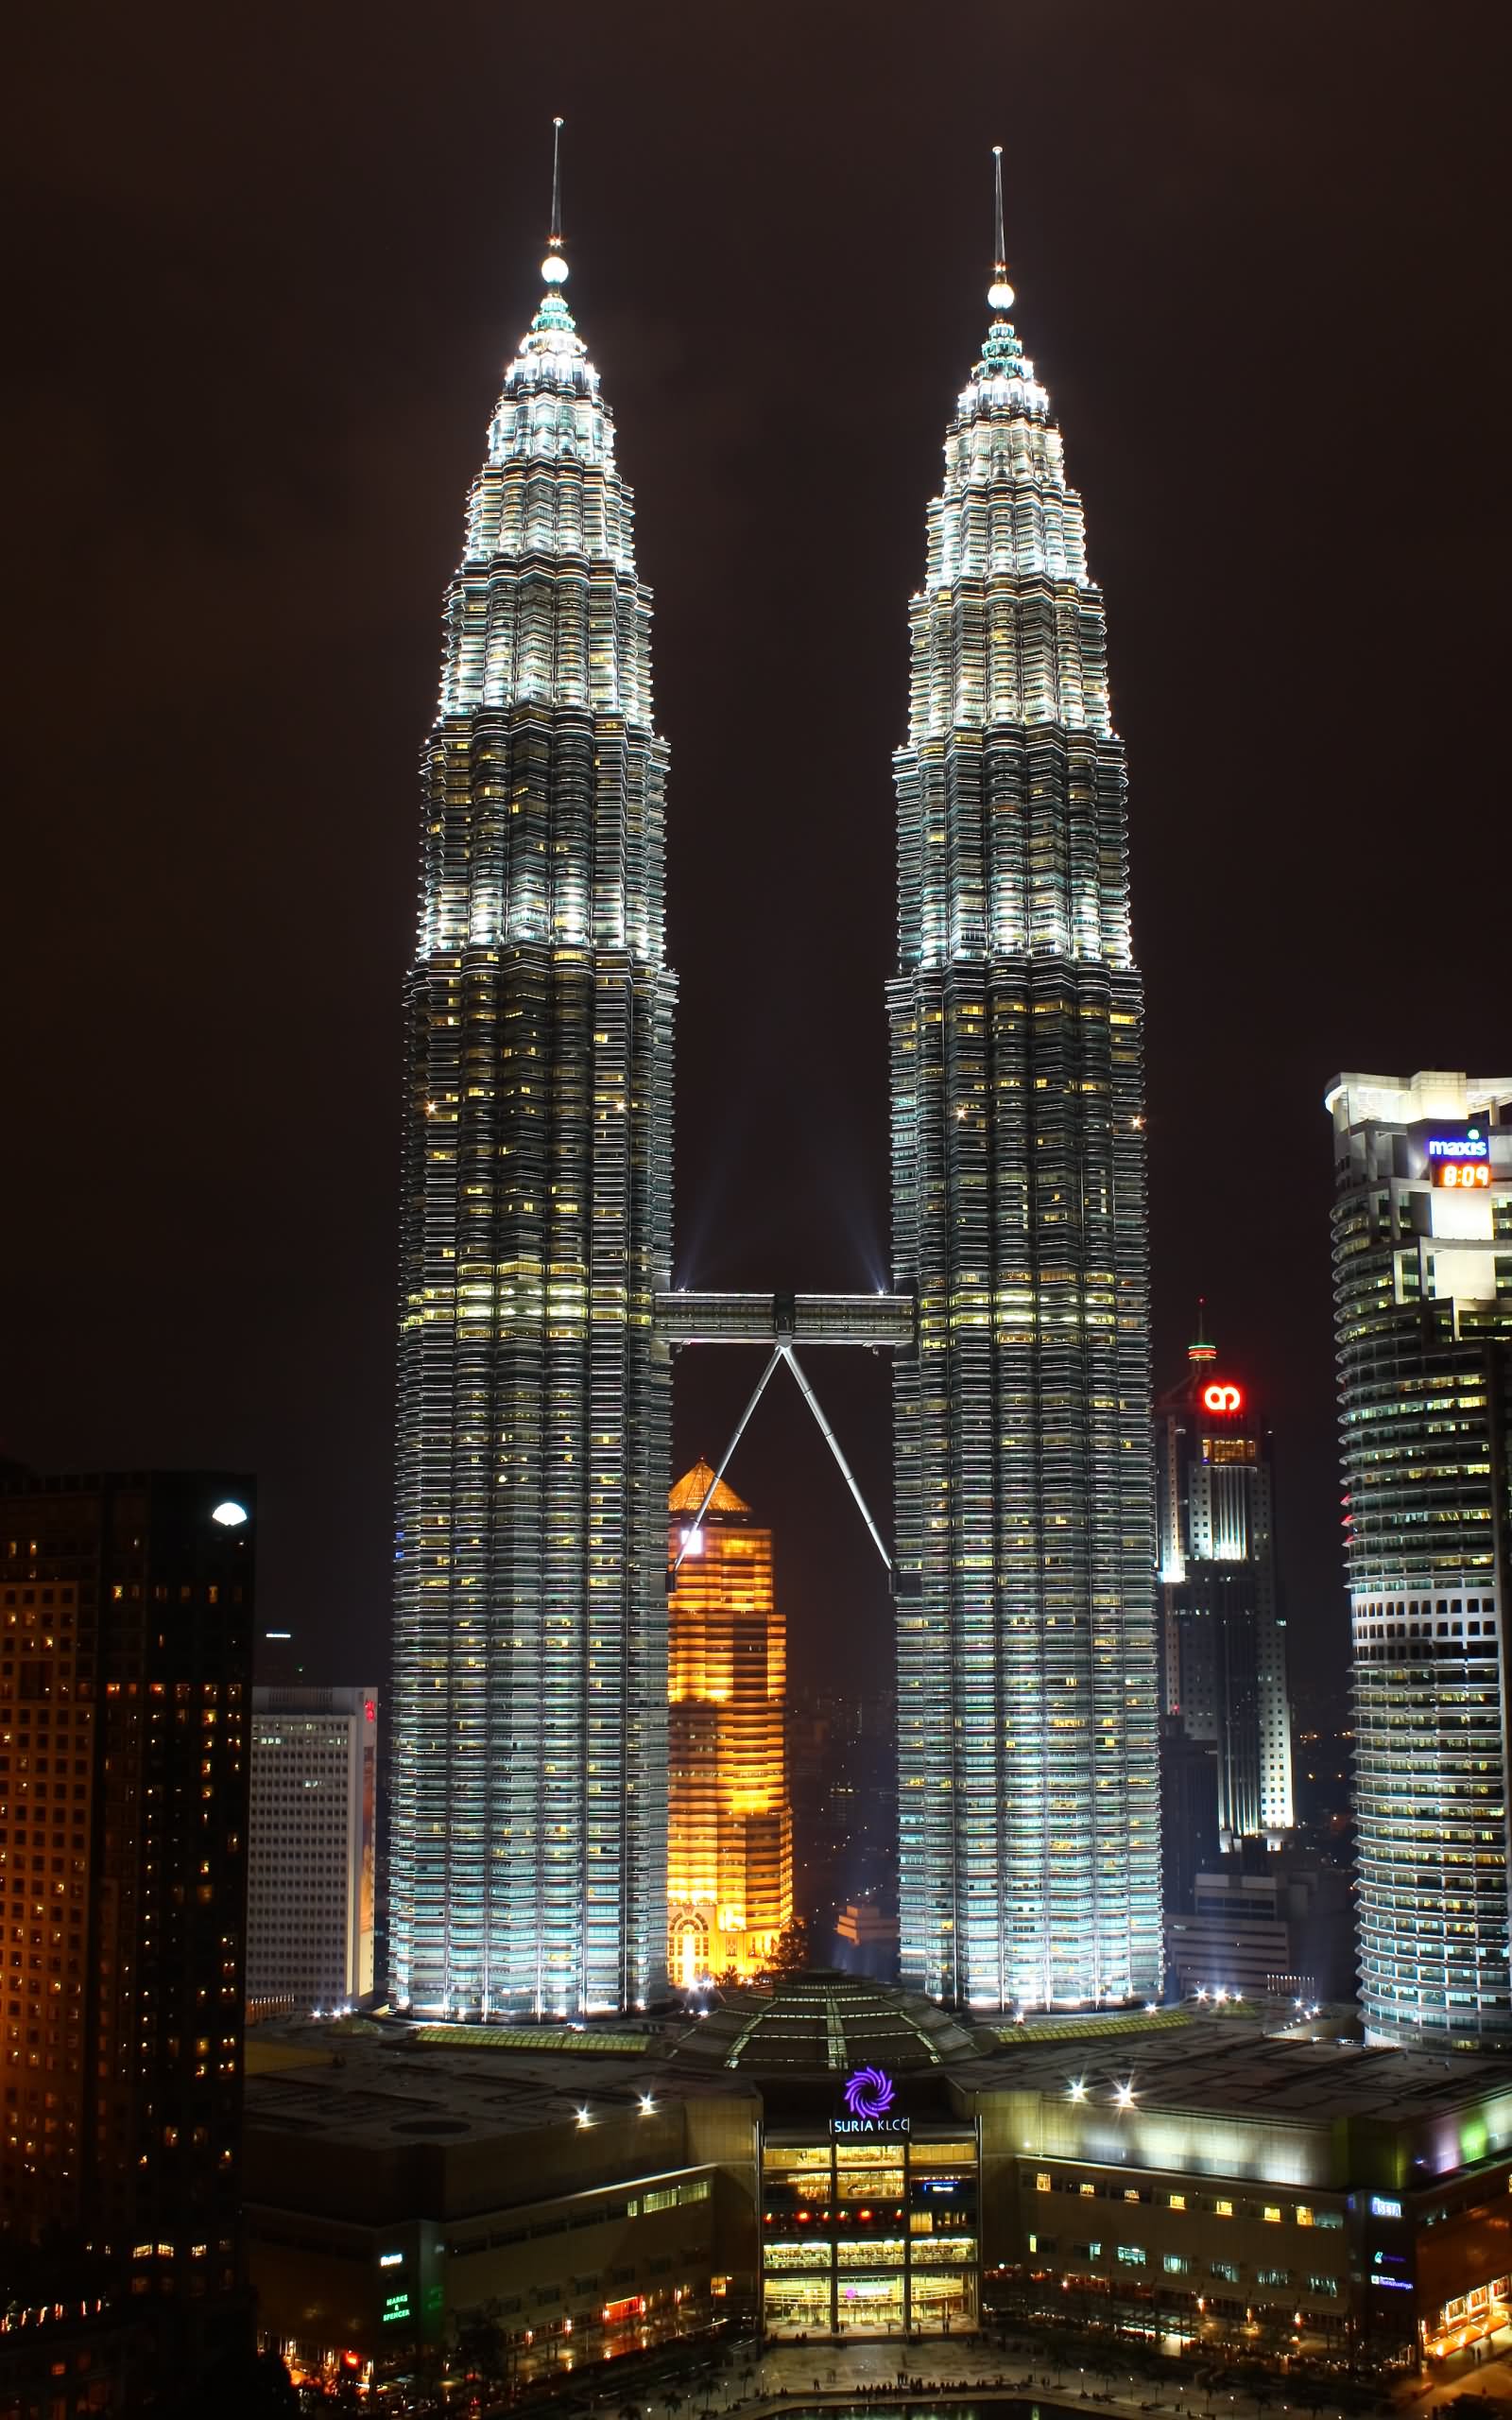 Adorable Night View Of Petronas Towers, Kuala Lumpur